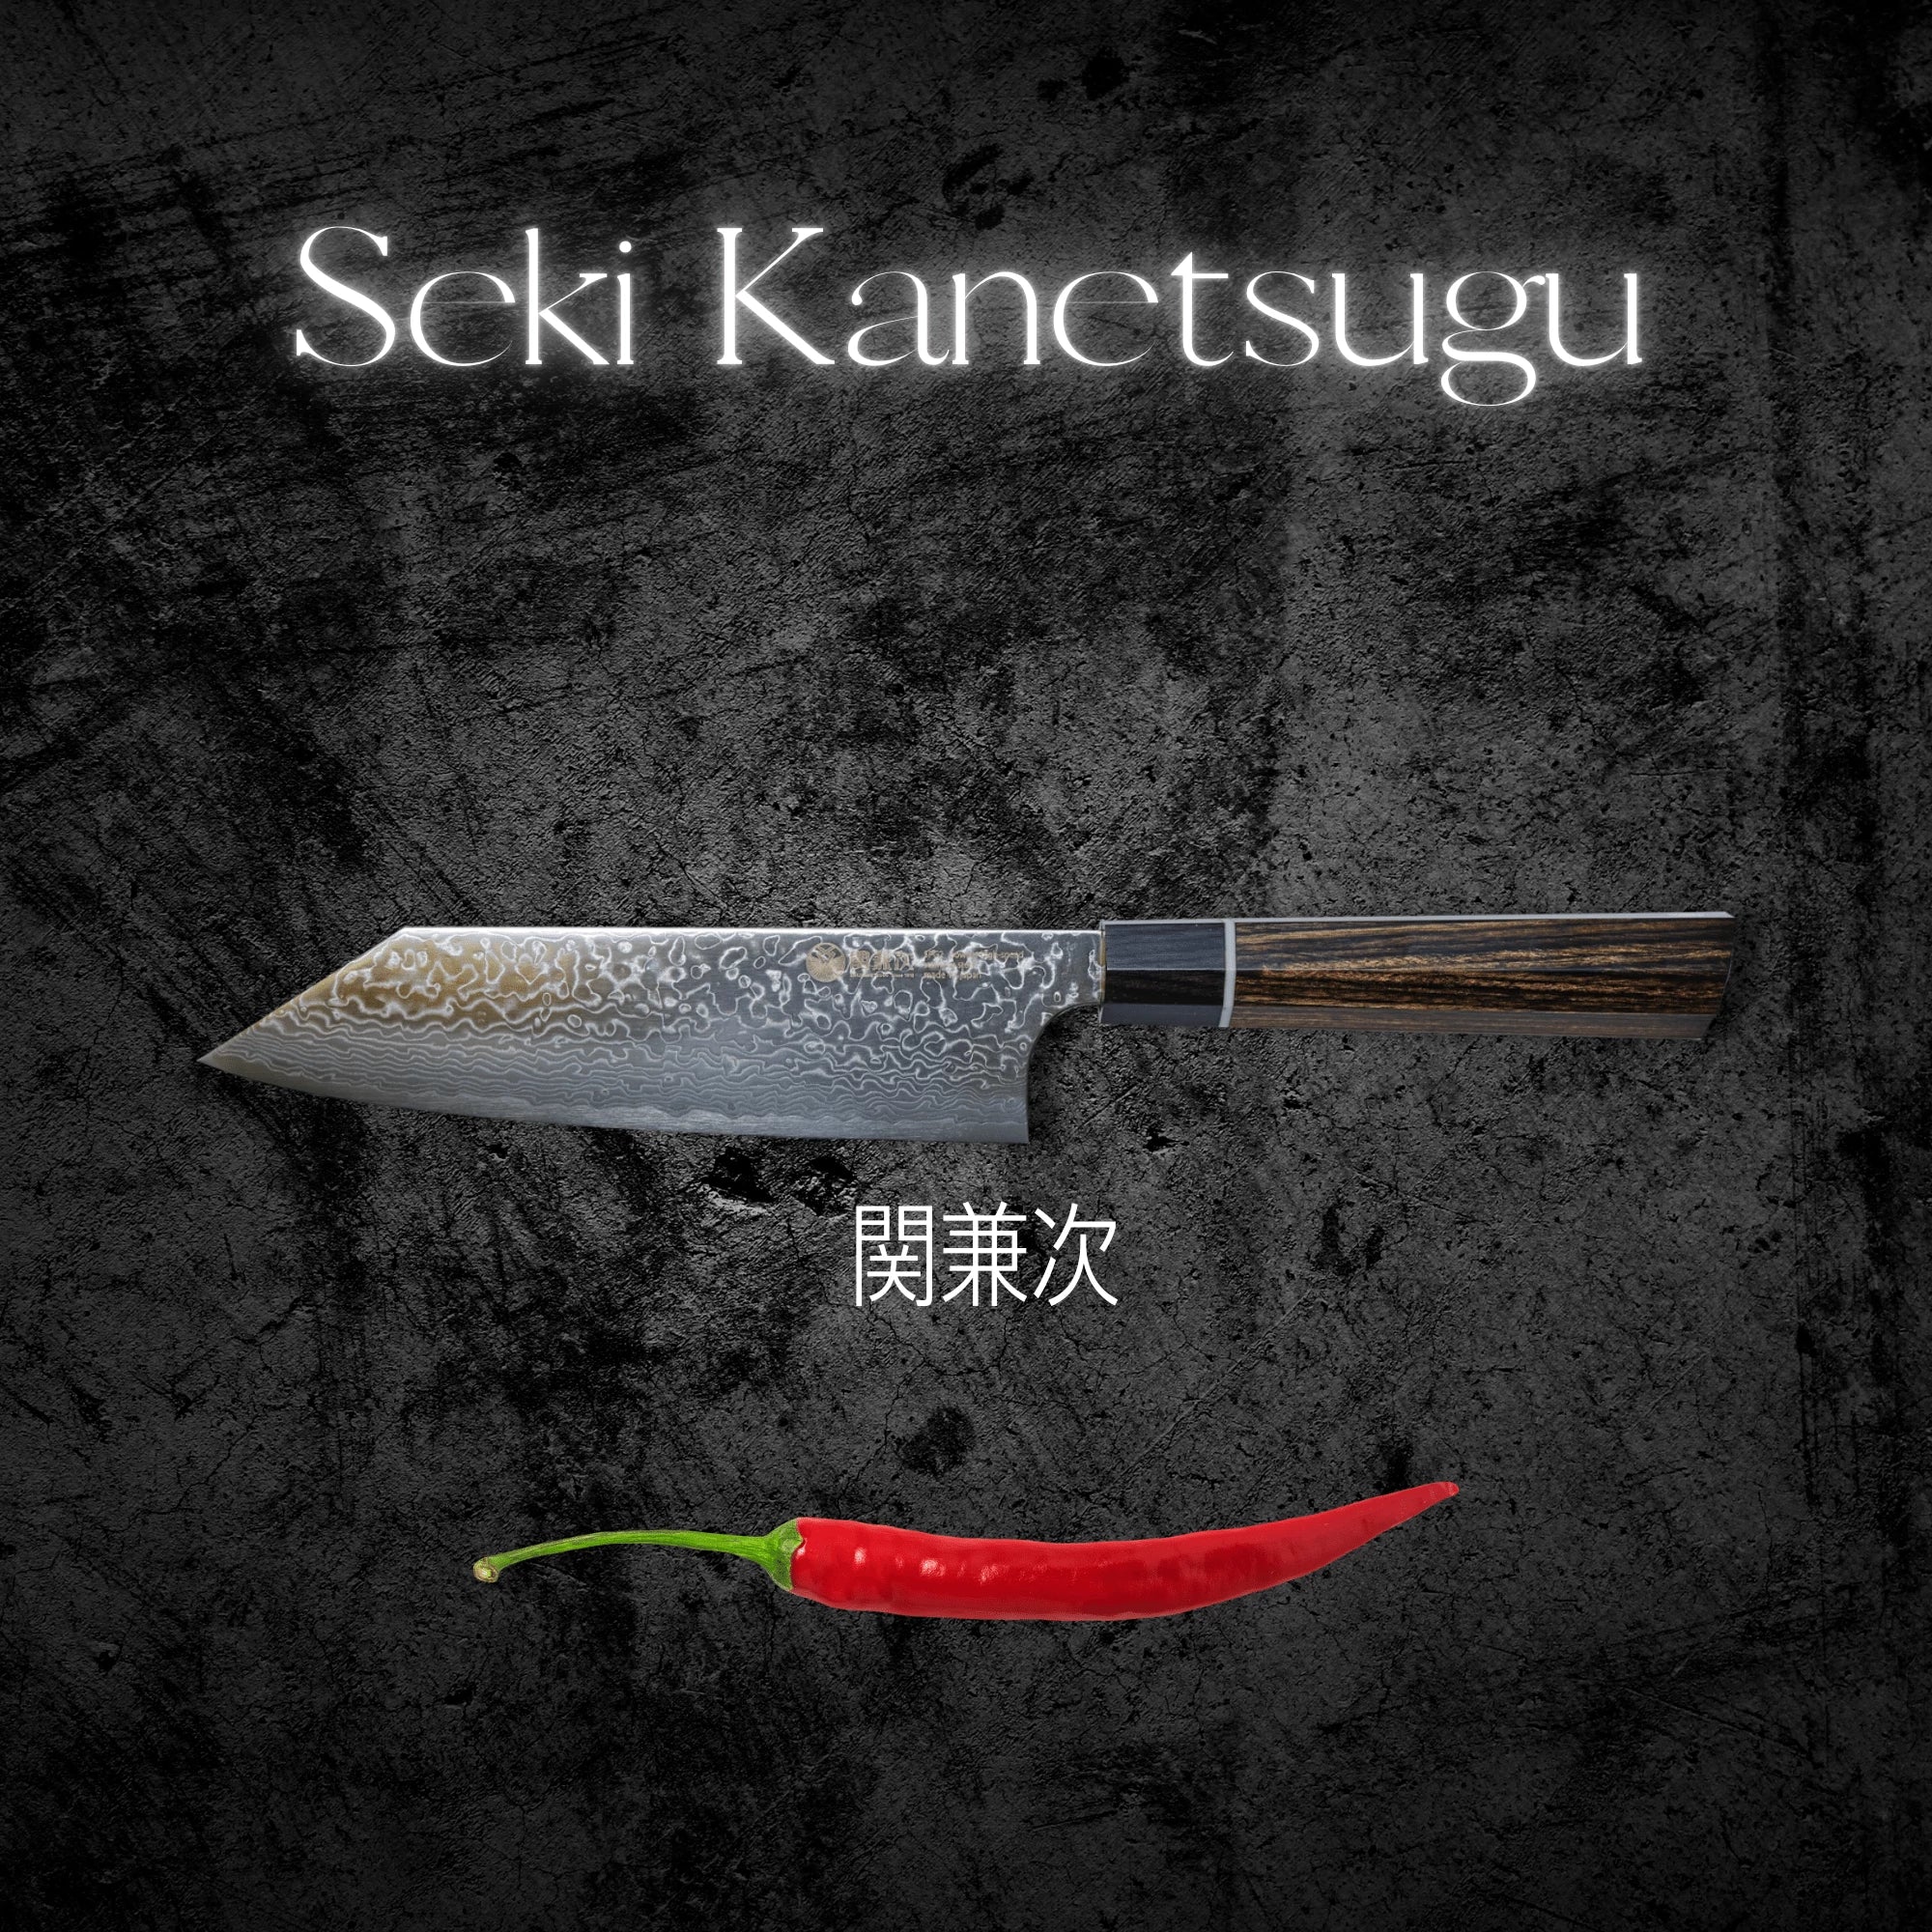 Seki Kanetsugu Knives Japan